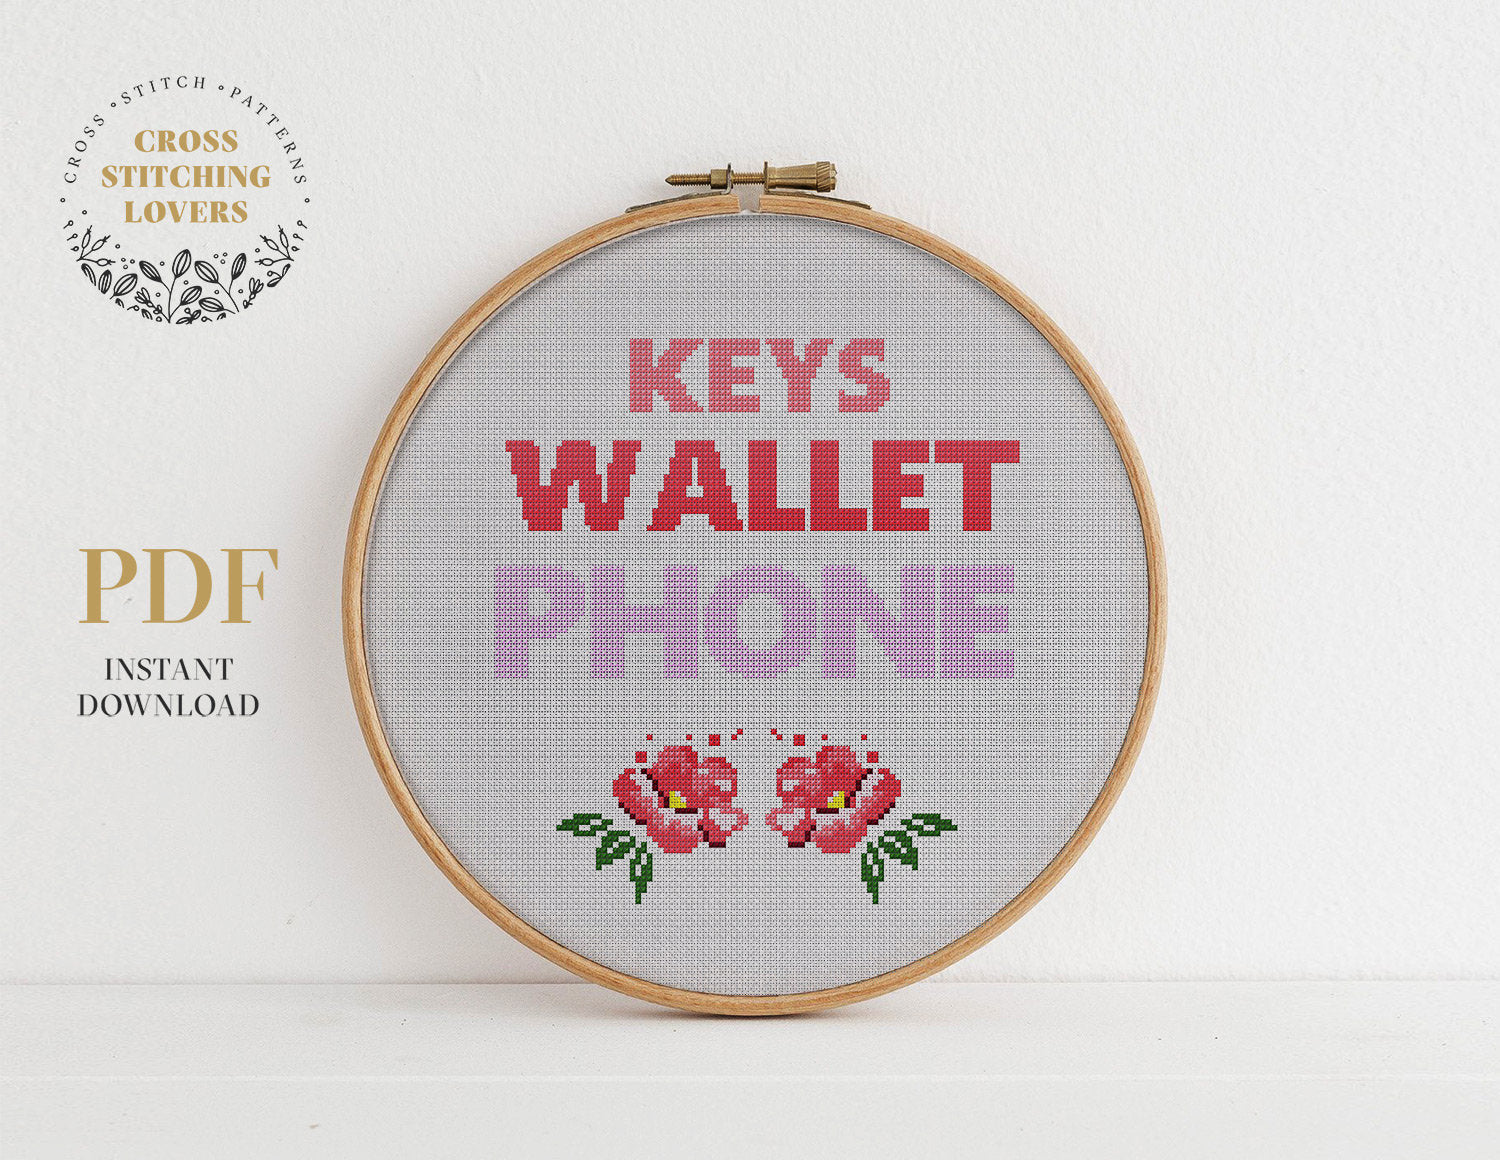 Keys wallet phone - Cross stitch pattern